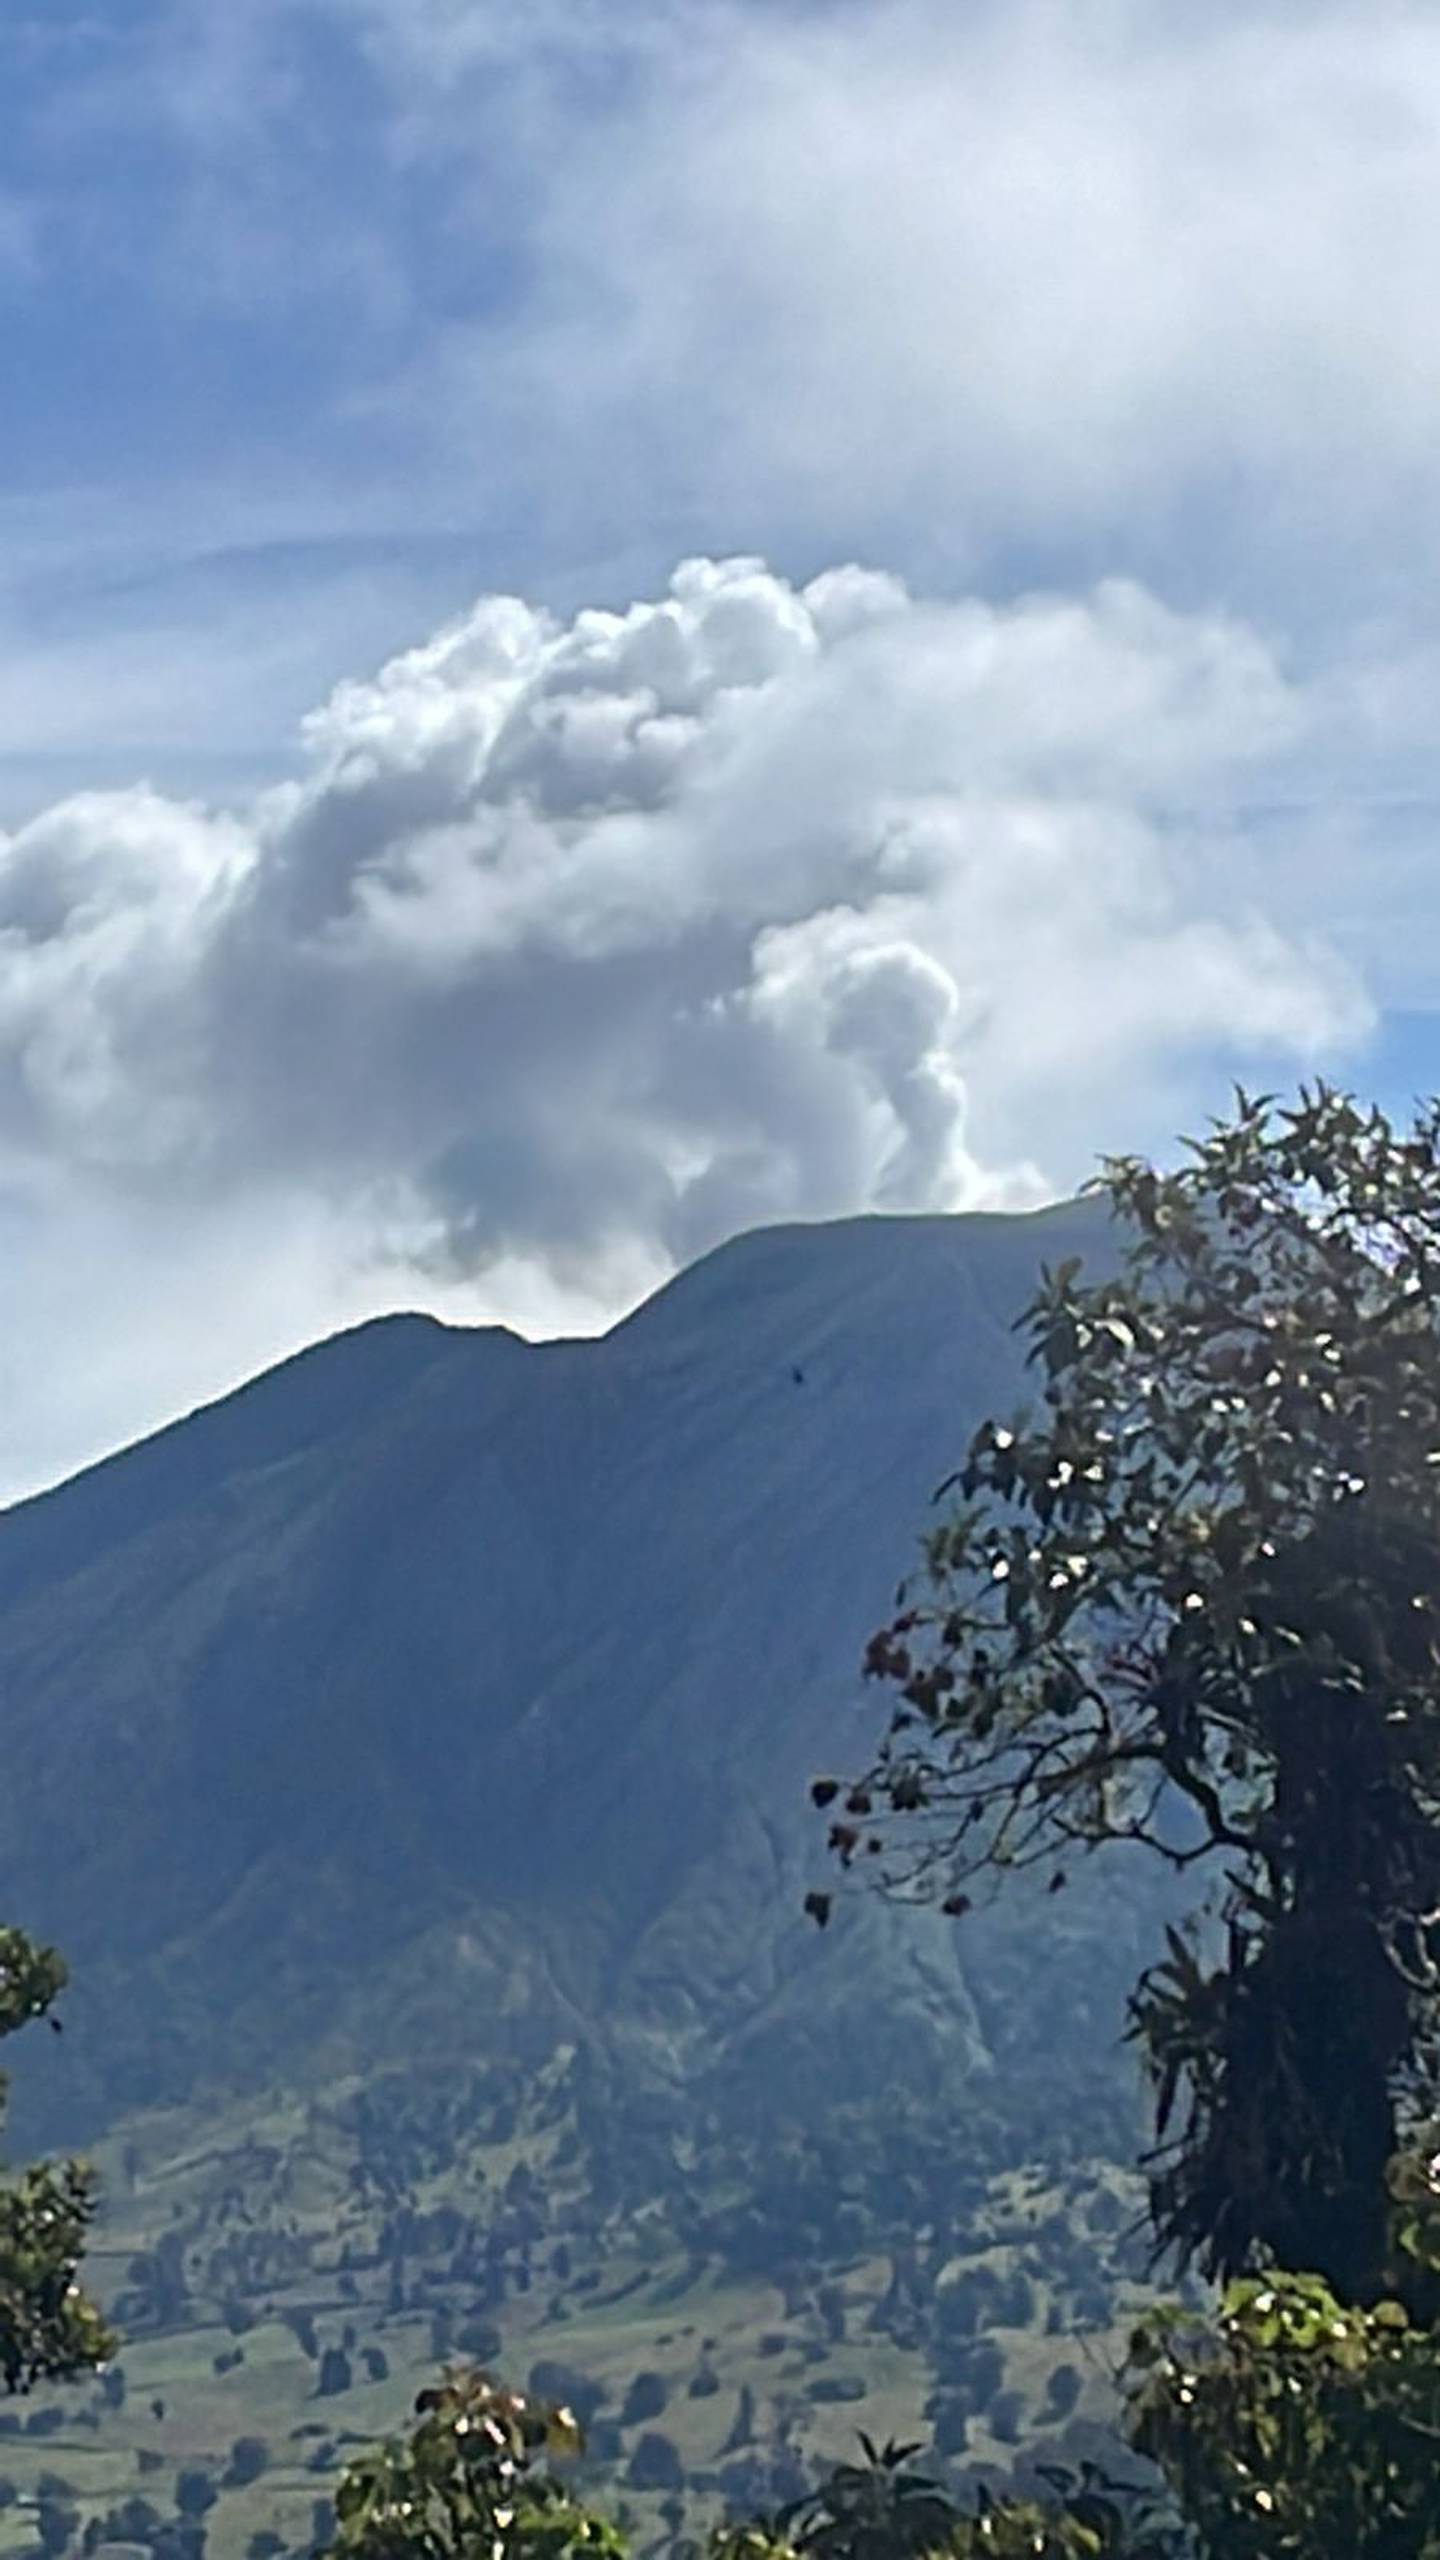 Las columnas de vapor en la cima de volcanes prevalecen varios años después de que termina una fuerte fase eruptiva. Este miércoles el volcán Turrialba mostró esa inofensiva actividad. Foto: Cortesía Javier Pacheco/Ovsicori.